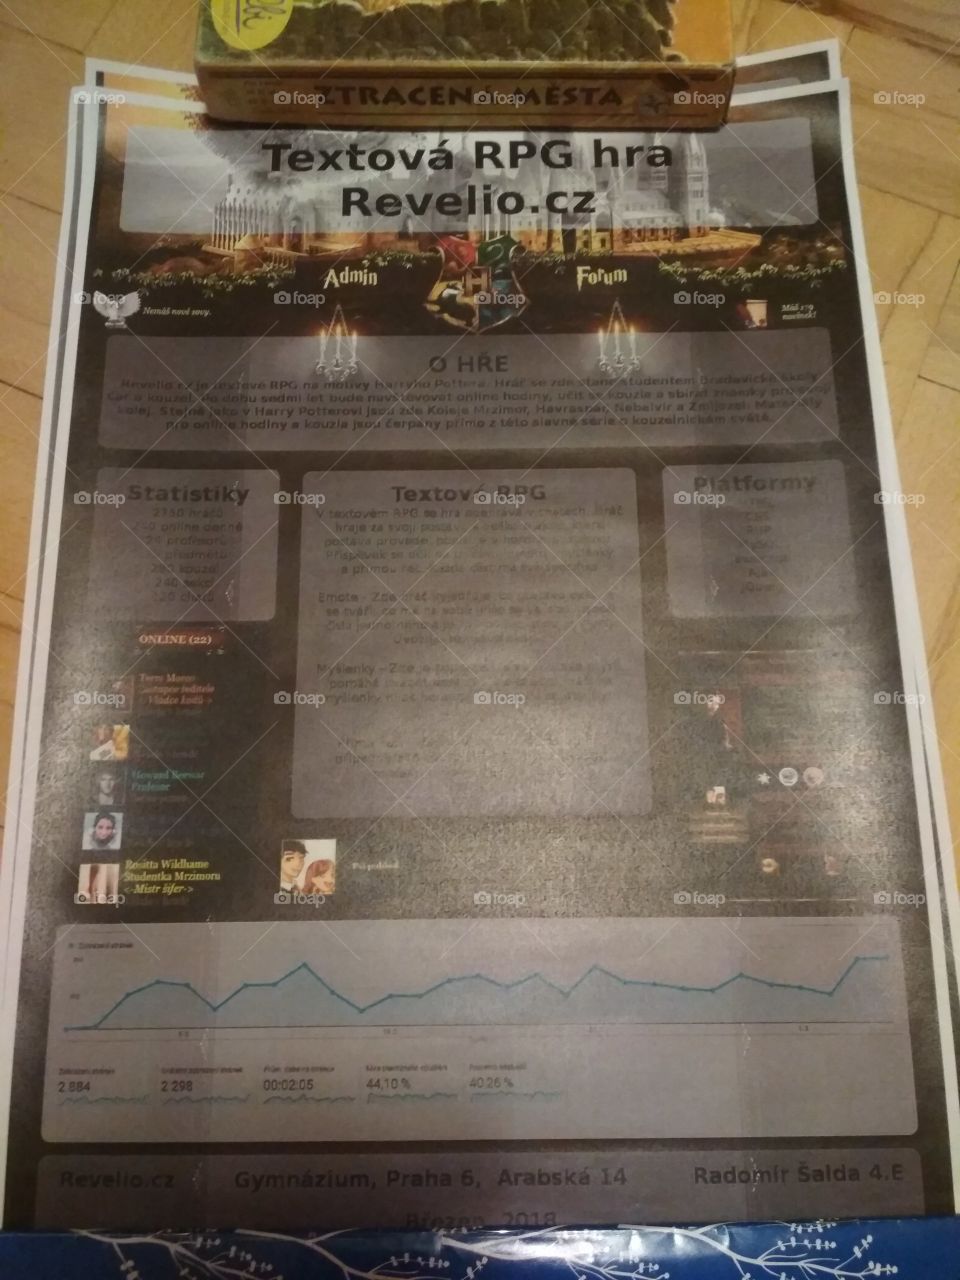 Poster of revelio.cz